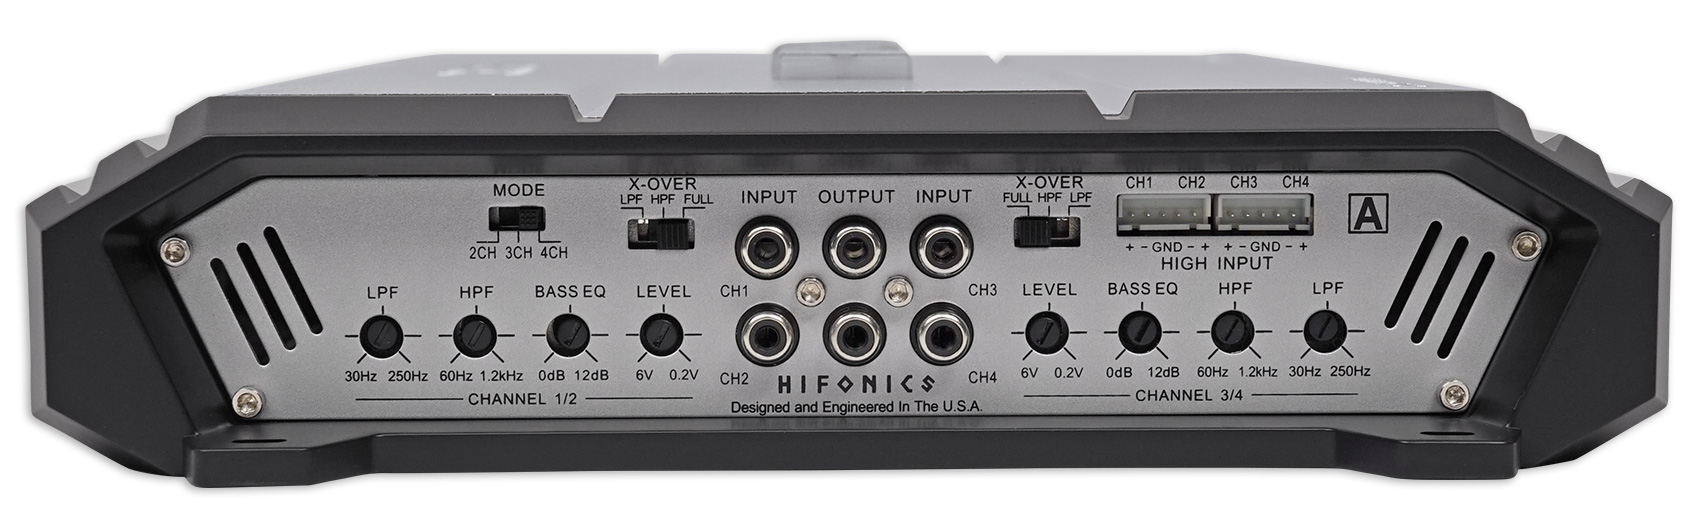 hifonics amp 5 channel